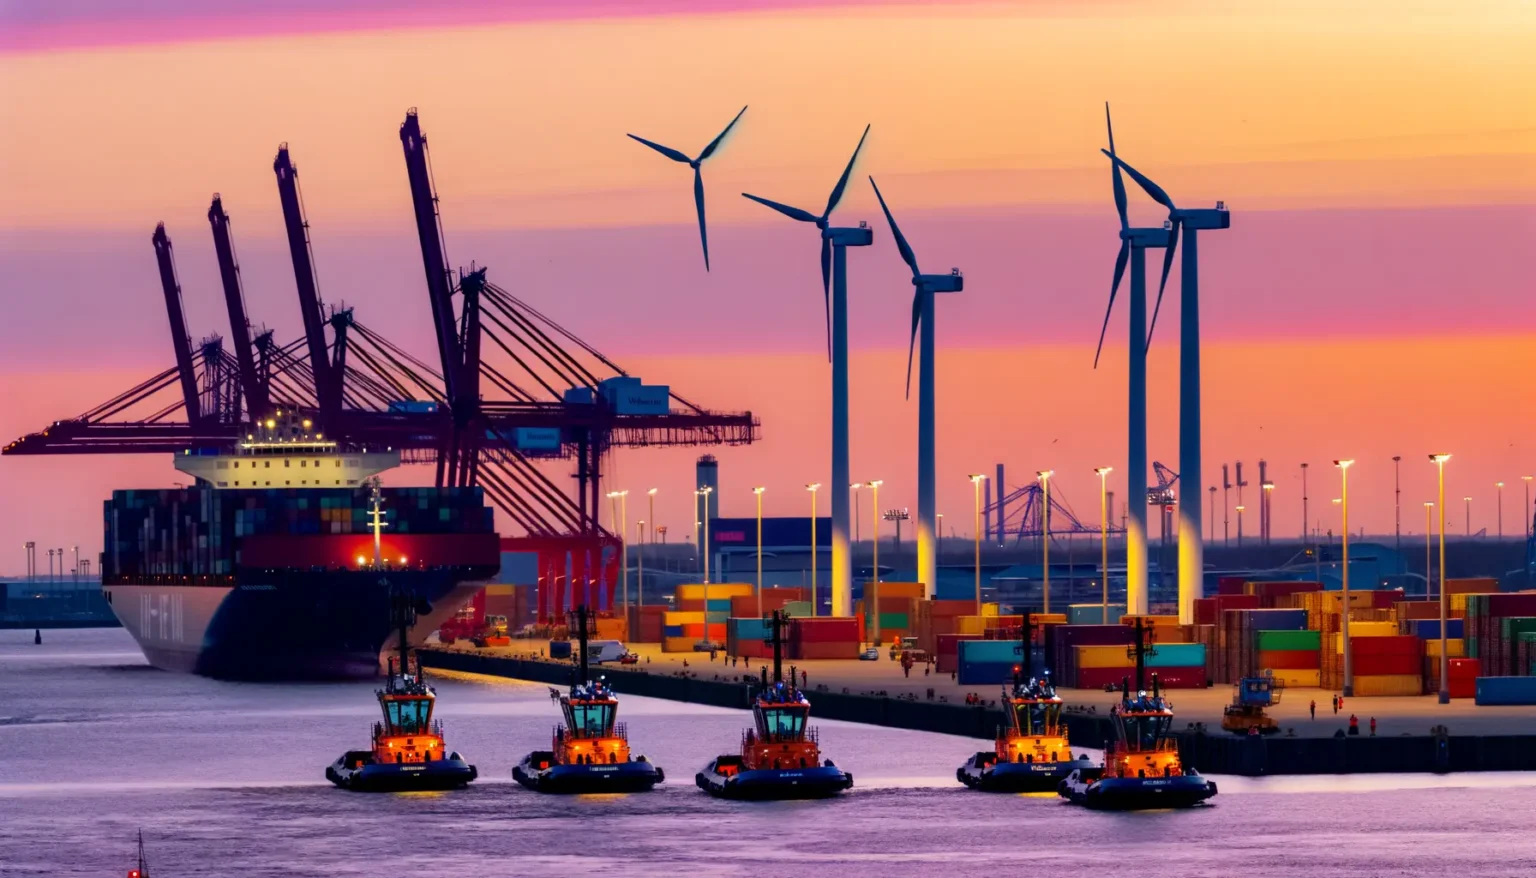 Eine abendliche Ansicht eines belebten Hafens, wo mehrere Schleppboote ein großes Containerschiff begleiten. Im Hintergrund sind gigantische Containerkräne und Windturbinen erkennbar, die sich gegen den leuchtend gefärbten Himmel bei Sonnenuntergang abzeichnen.